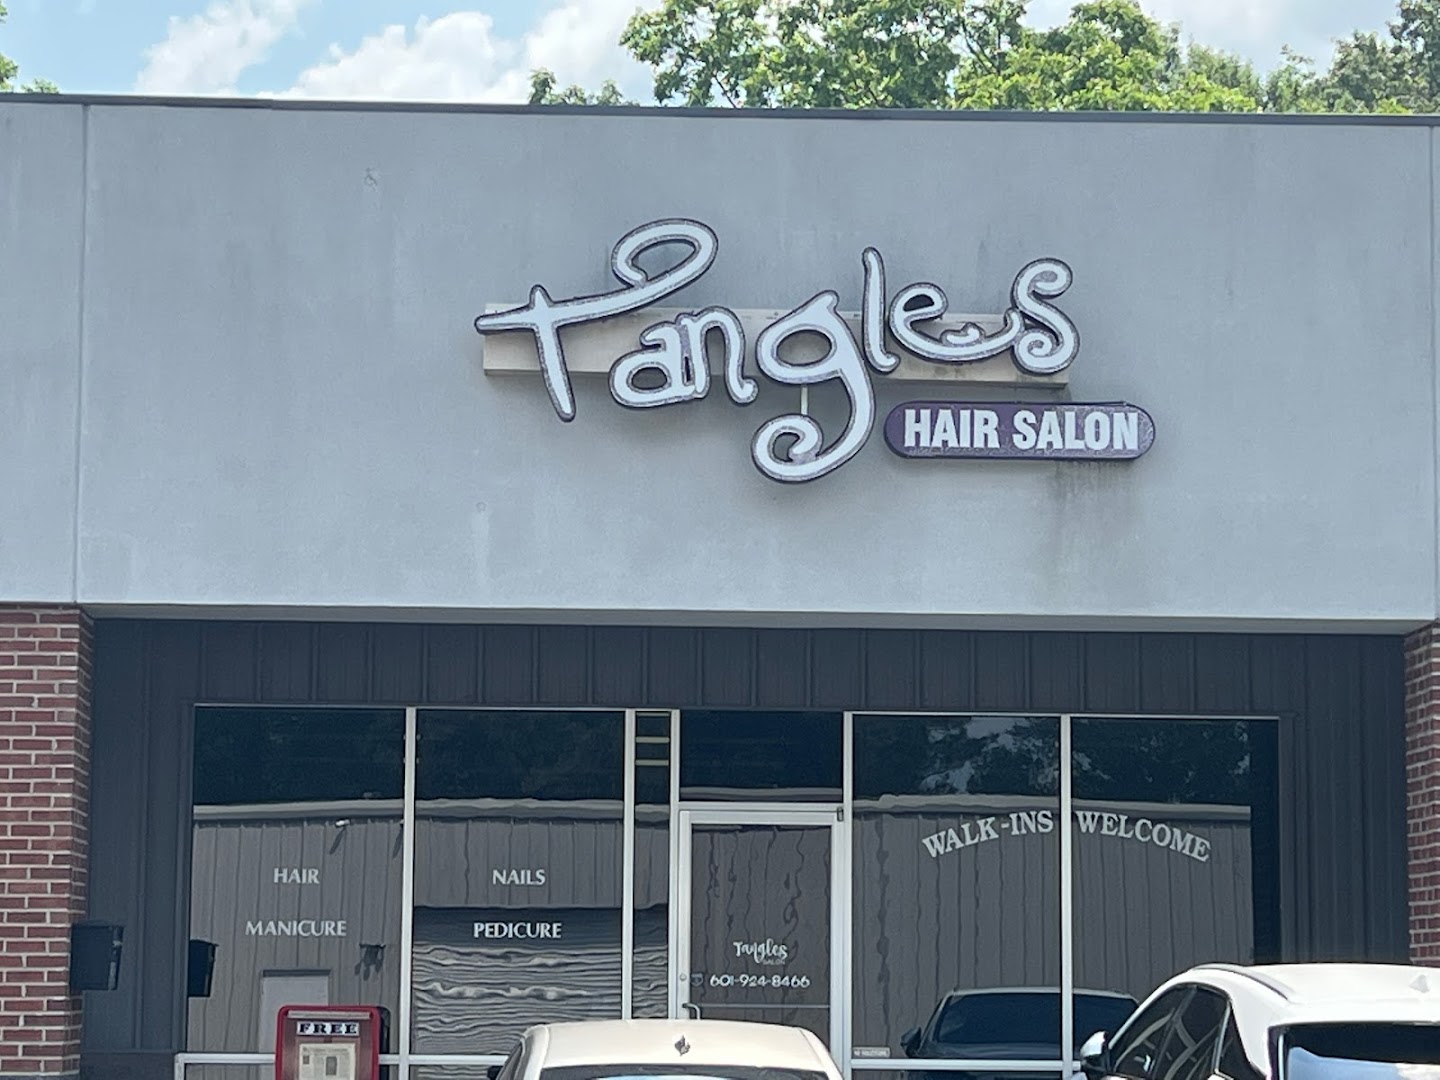 Tangles hair salon